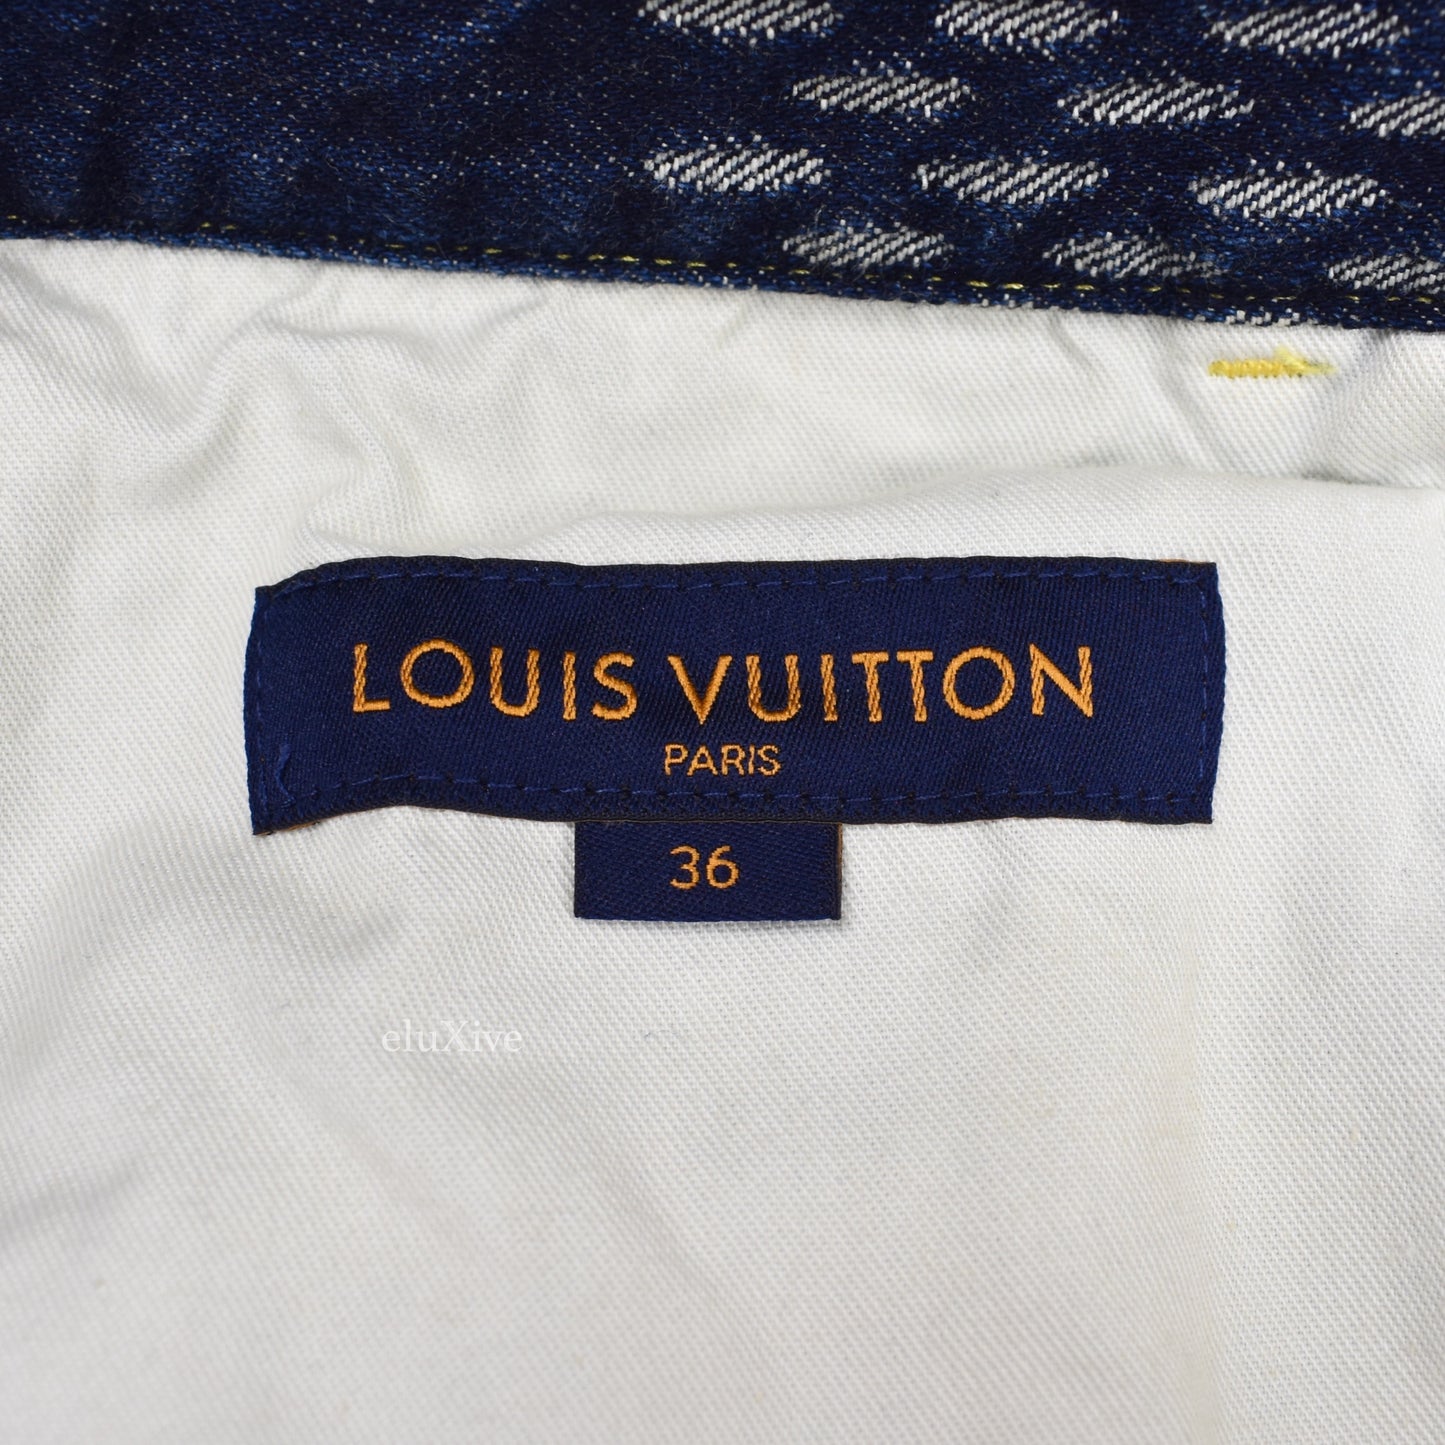 TheDenimBar - Louis Vuitton x Nigo Jeans Size 30 พร้อมส่ง